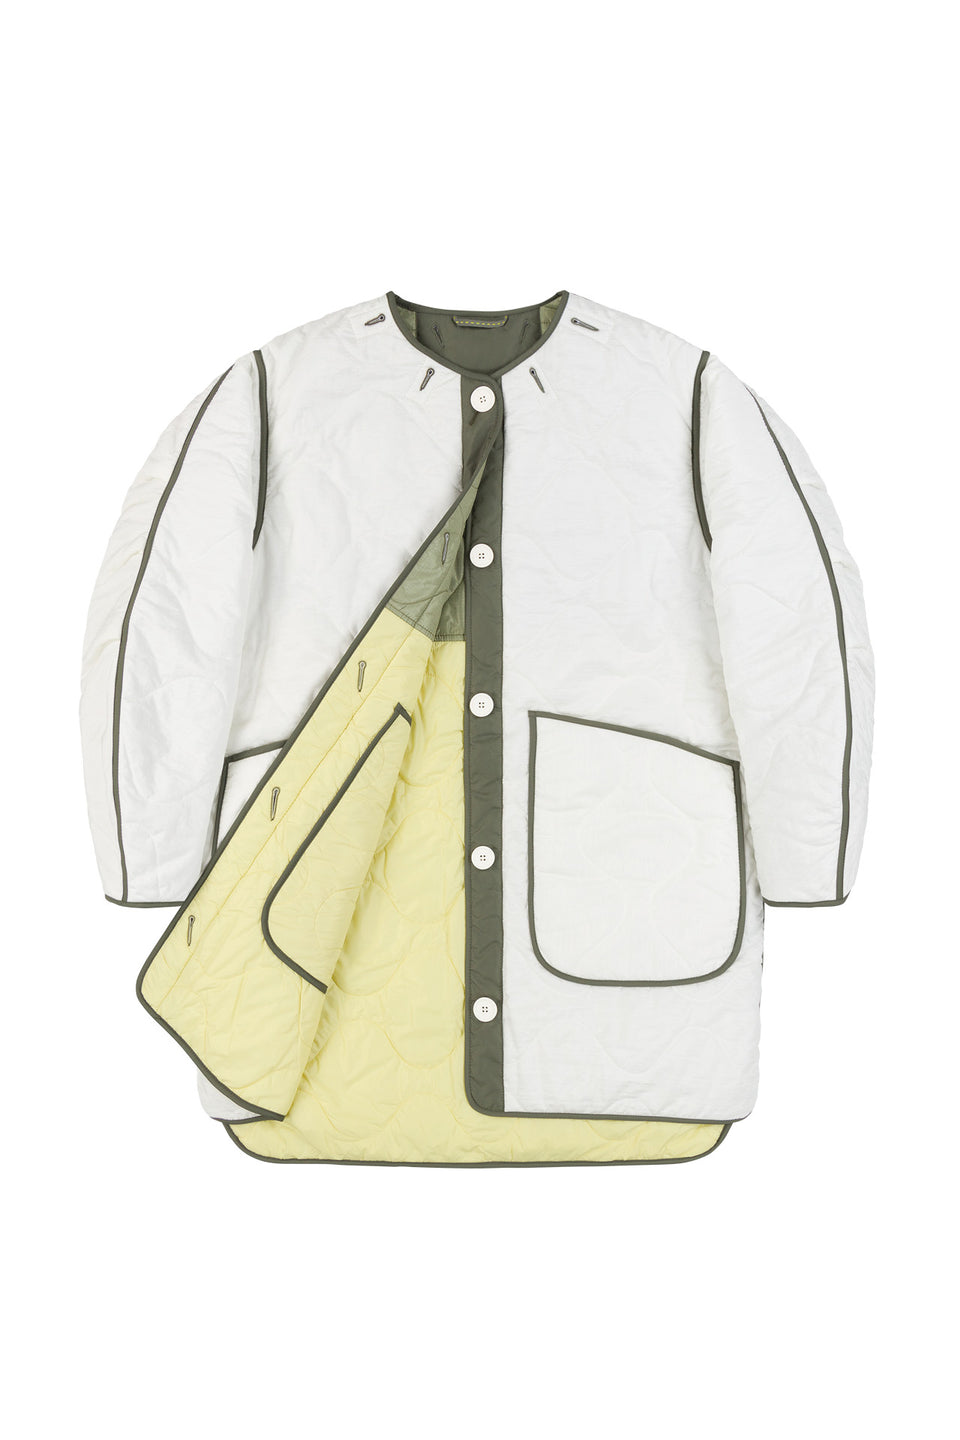 Colourblock Quilt Jacket - Pale Sage / White (listing page thumbnail)